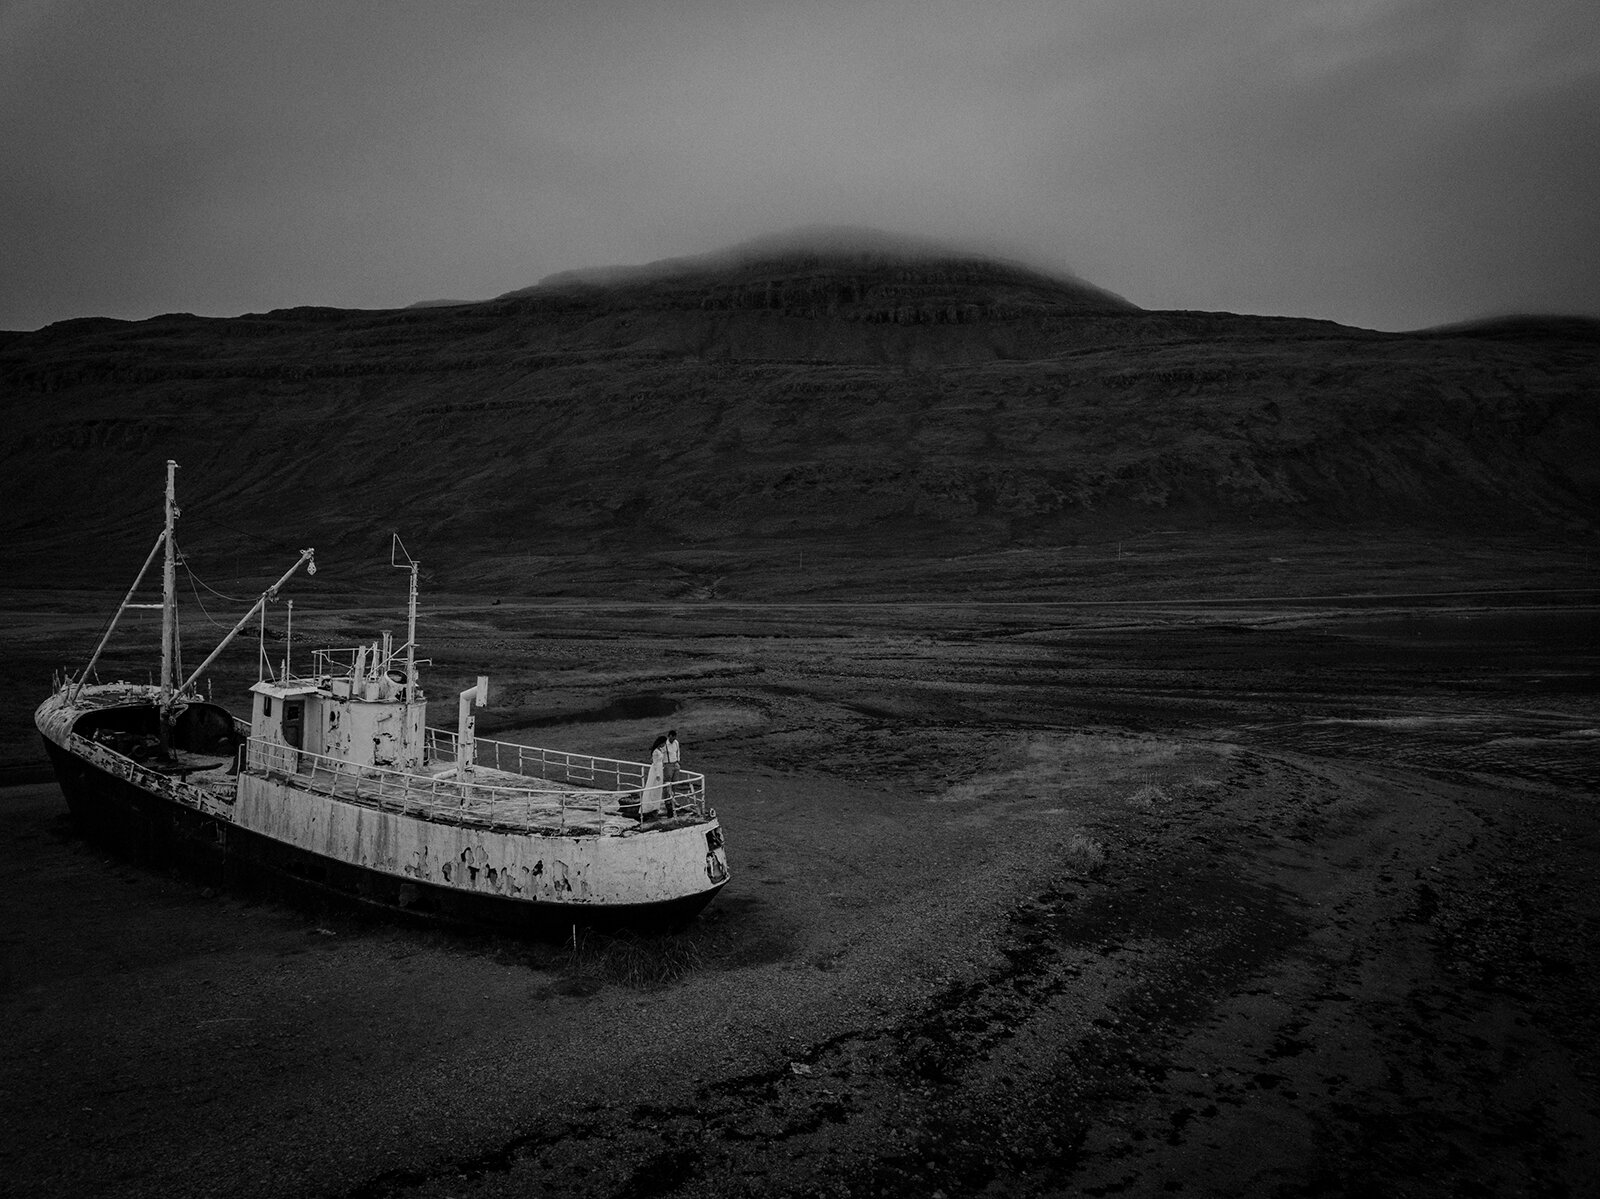  Xác tàu Garðar BA 64 ở Westfjord. Tên xa xưa là Globe IV, Garðar BA 64 được đóng năm 1912 ở Na-Uy, một trong những tàu săn cá voi hiện đại nhất lúc bấy giờ, với lớp vỏ sắt dày có thể đâm thủng băng biển Nam.  Năm 1962 khi luật giới hạn săn cá voi đư